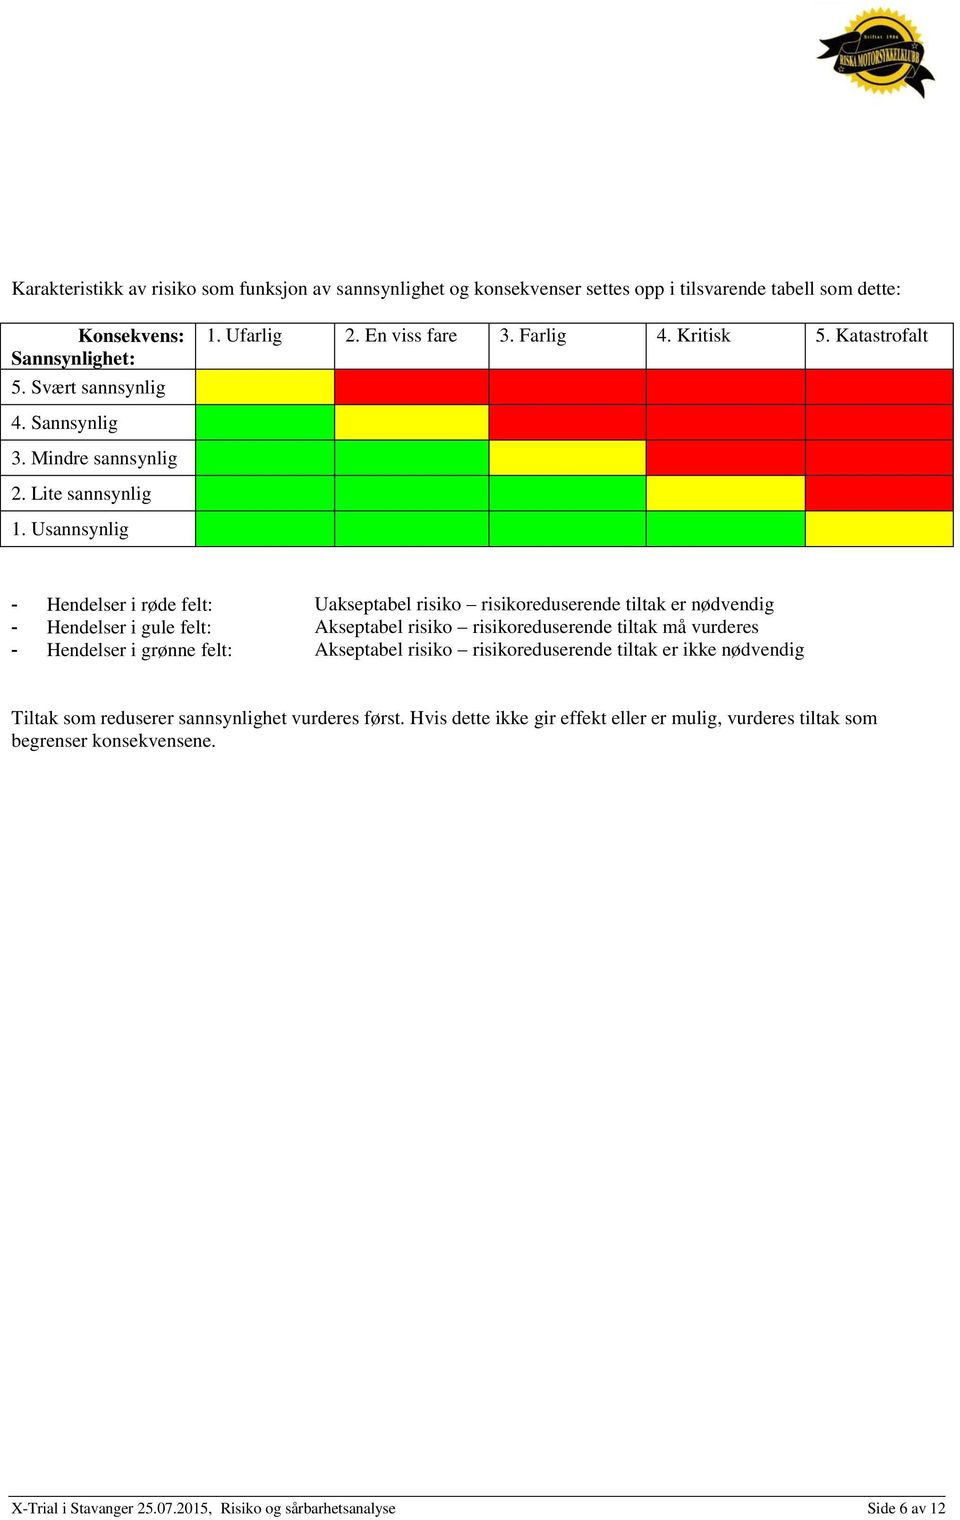 Usannsynlig - Hendelser i røde felt: Uakseptabel risiko risikoreduserende tiltak er nødvendig - Hendelser i gule felt: Akseptabel risiko risikoreduserende tiltak må vurderes - Hendelser i